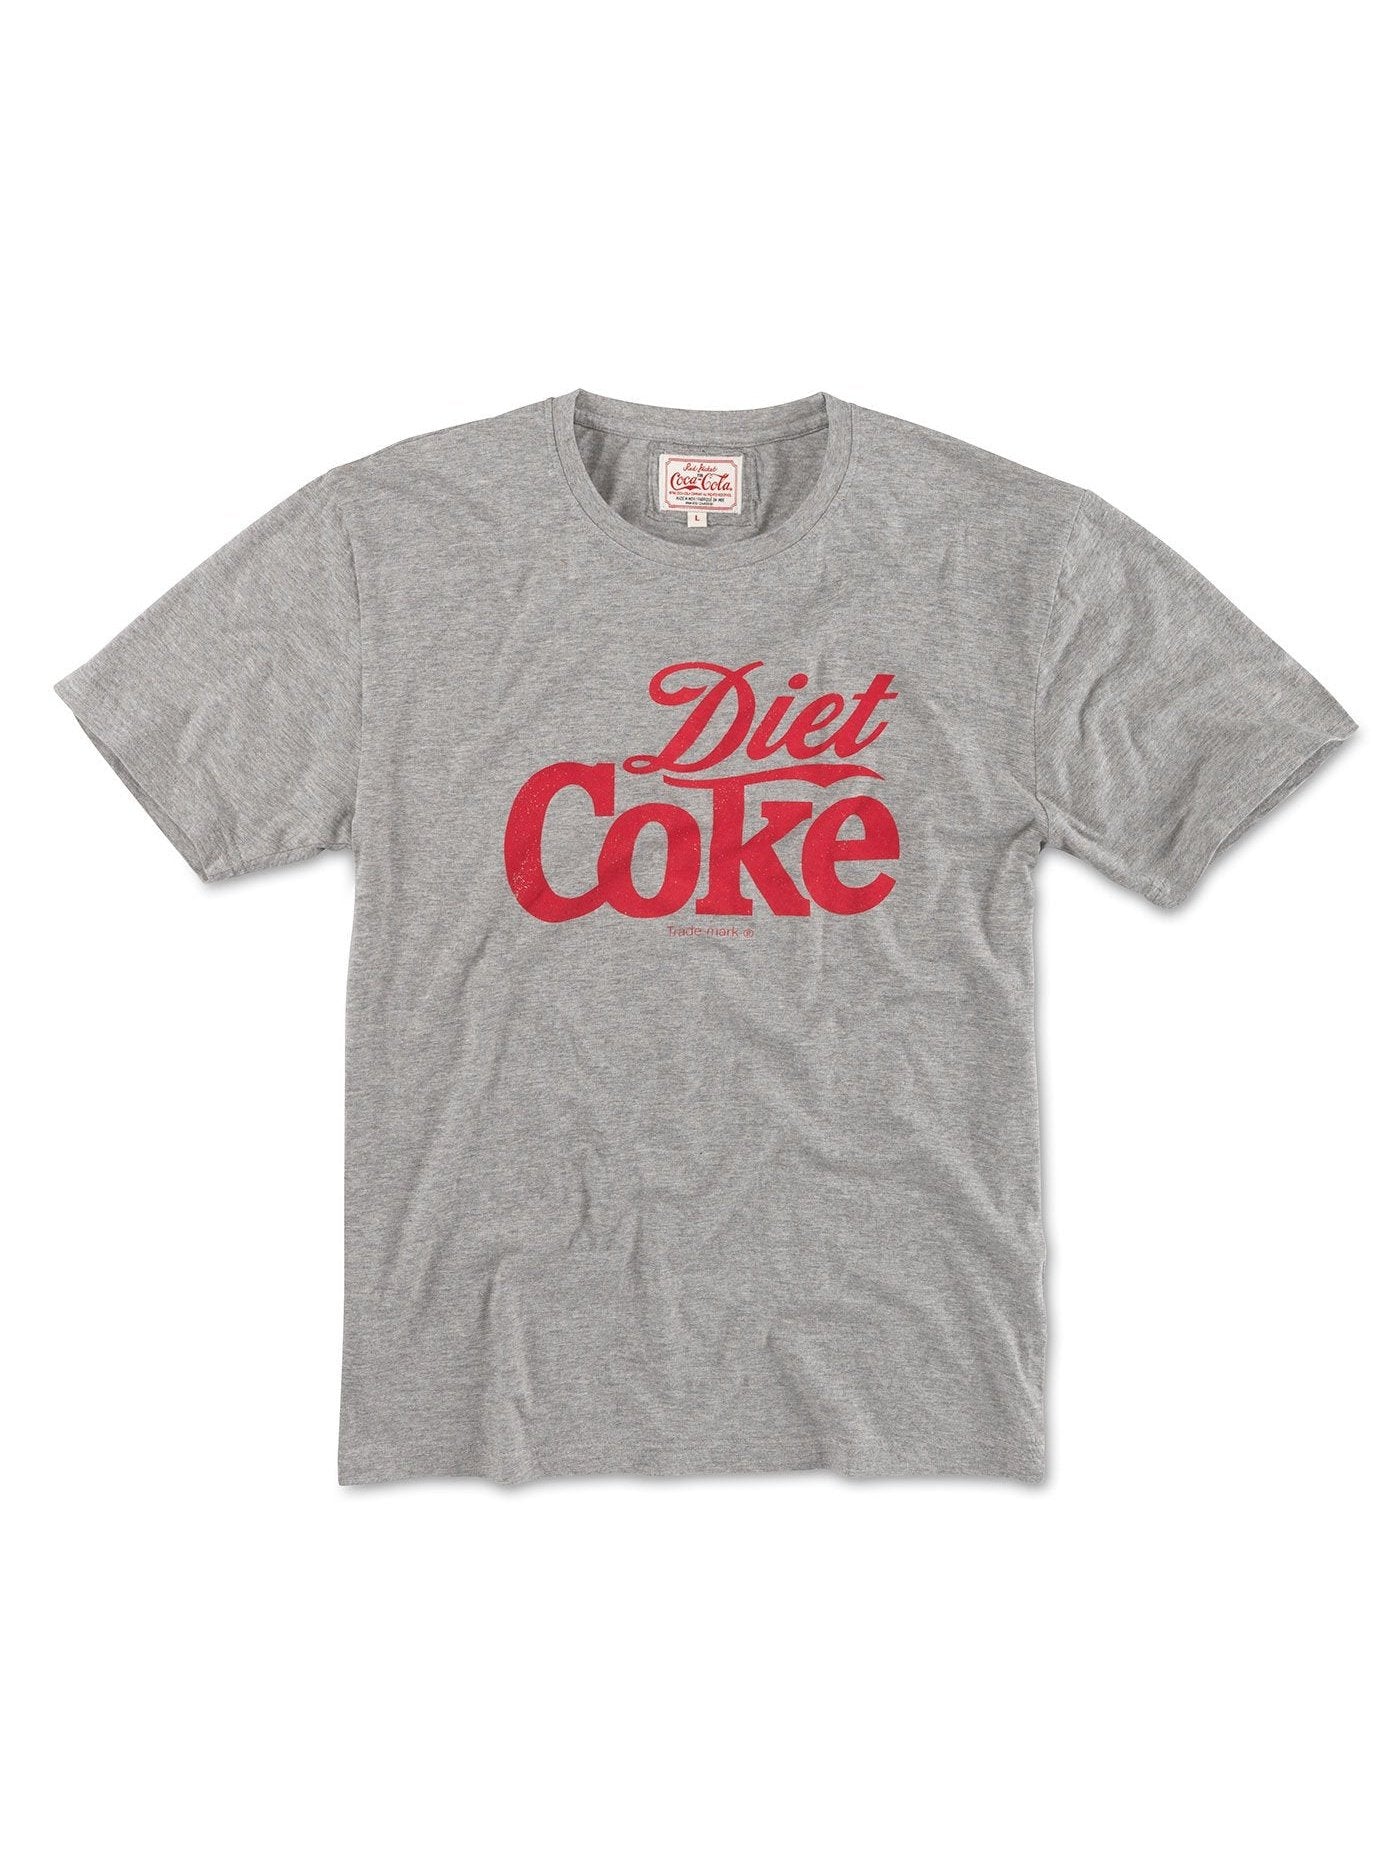 American Needle Red Jacket Men's Diet Coke BT2 Brass Tacks T-Shirts Heather Grey RJ801F-COKE